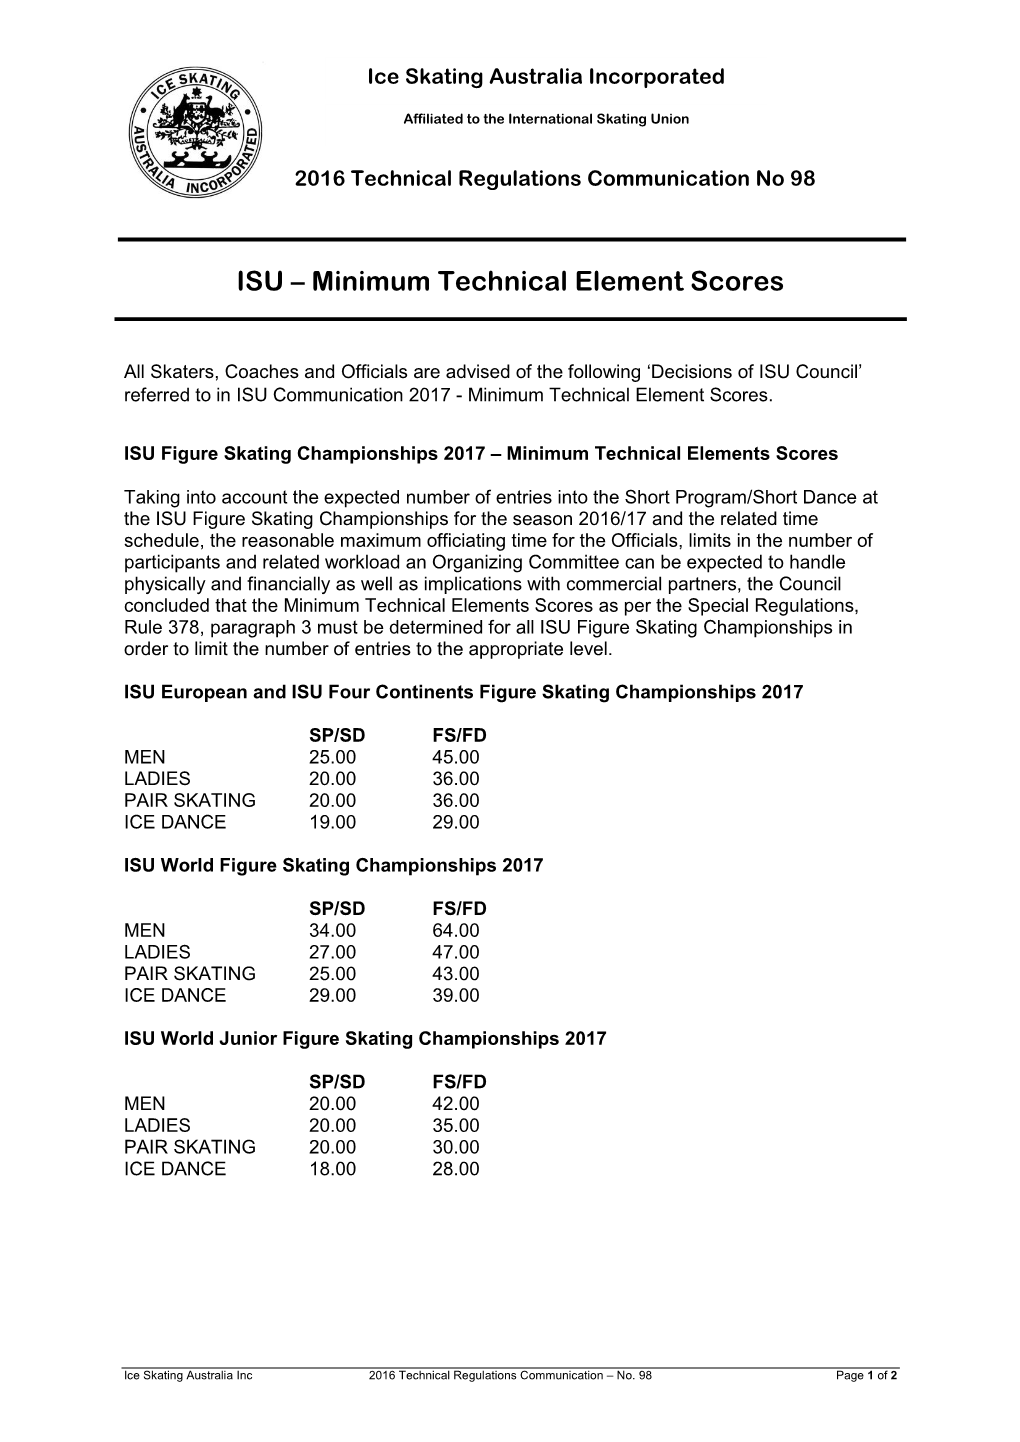 ISU – Minimum Technical Element Scores